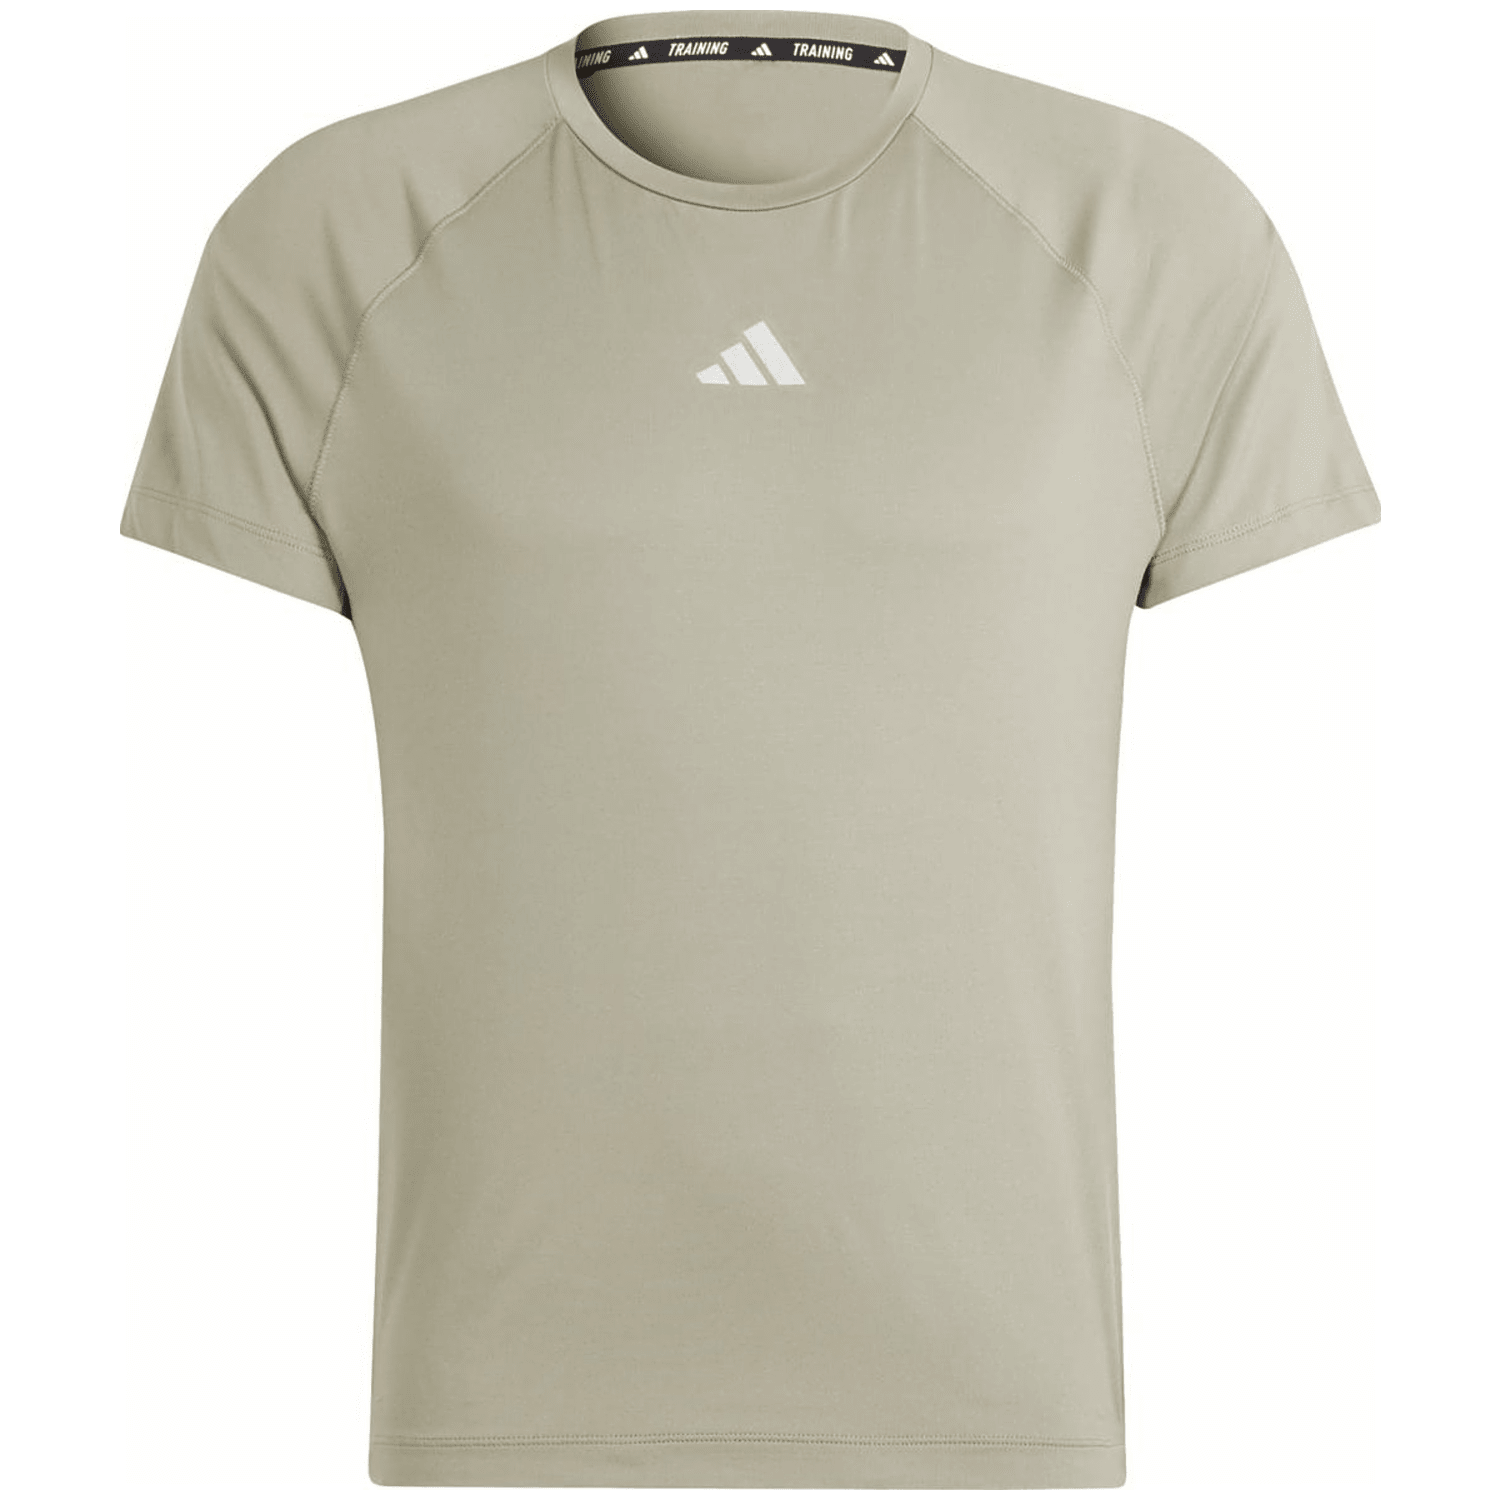 Adidas Gym+ Training Herren T-Shirt